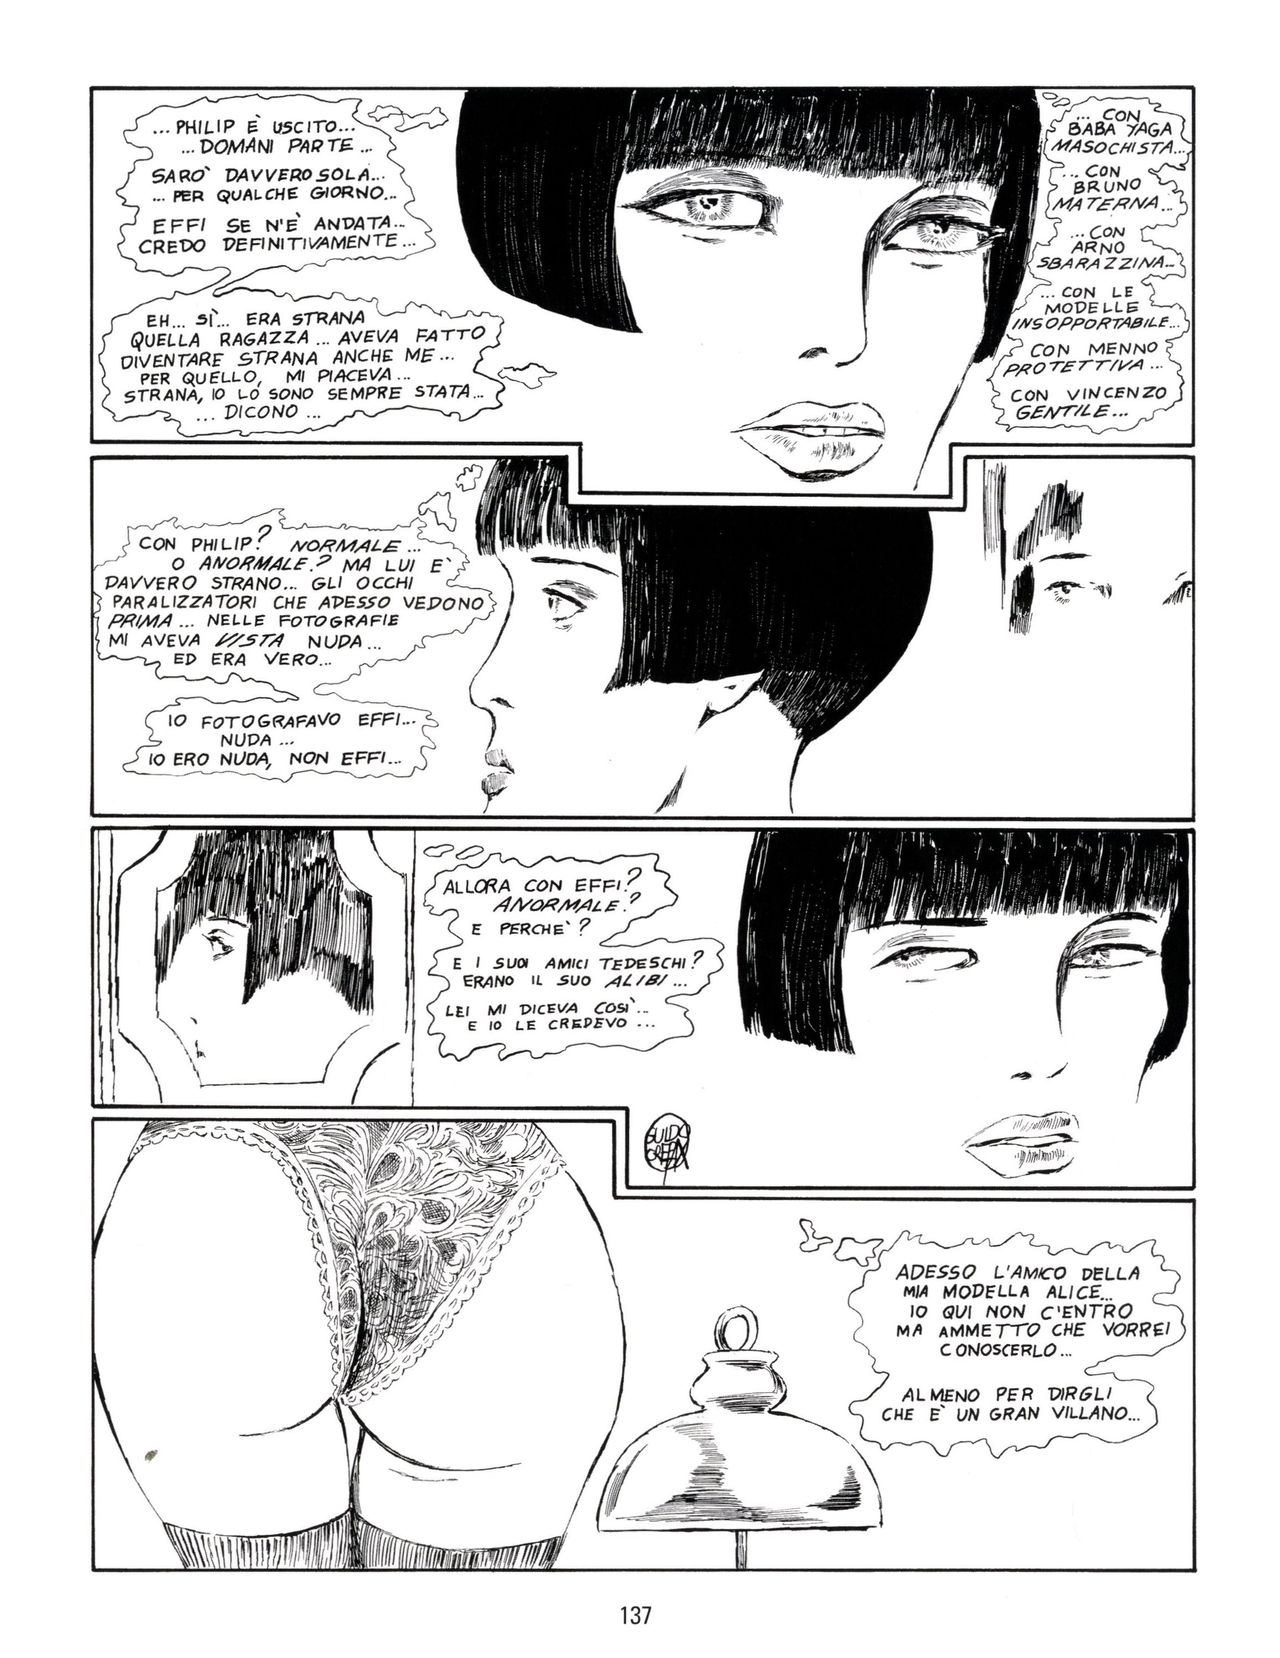 [Guido Crepax] Erotica Fumetti #29 : Arrivederci Valentina? : Verso una nuova vita [Italian] 140